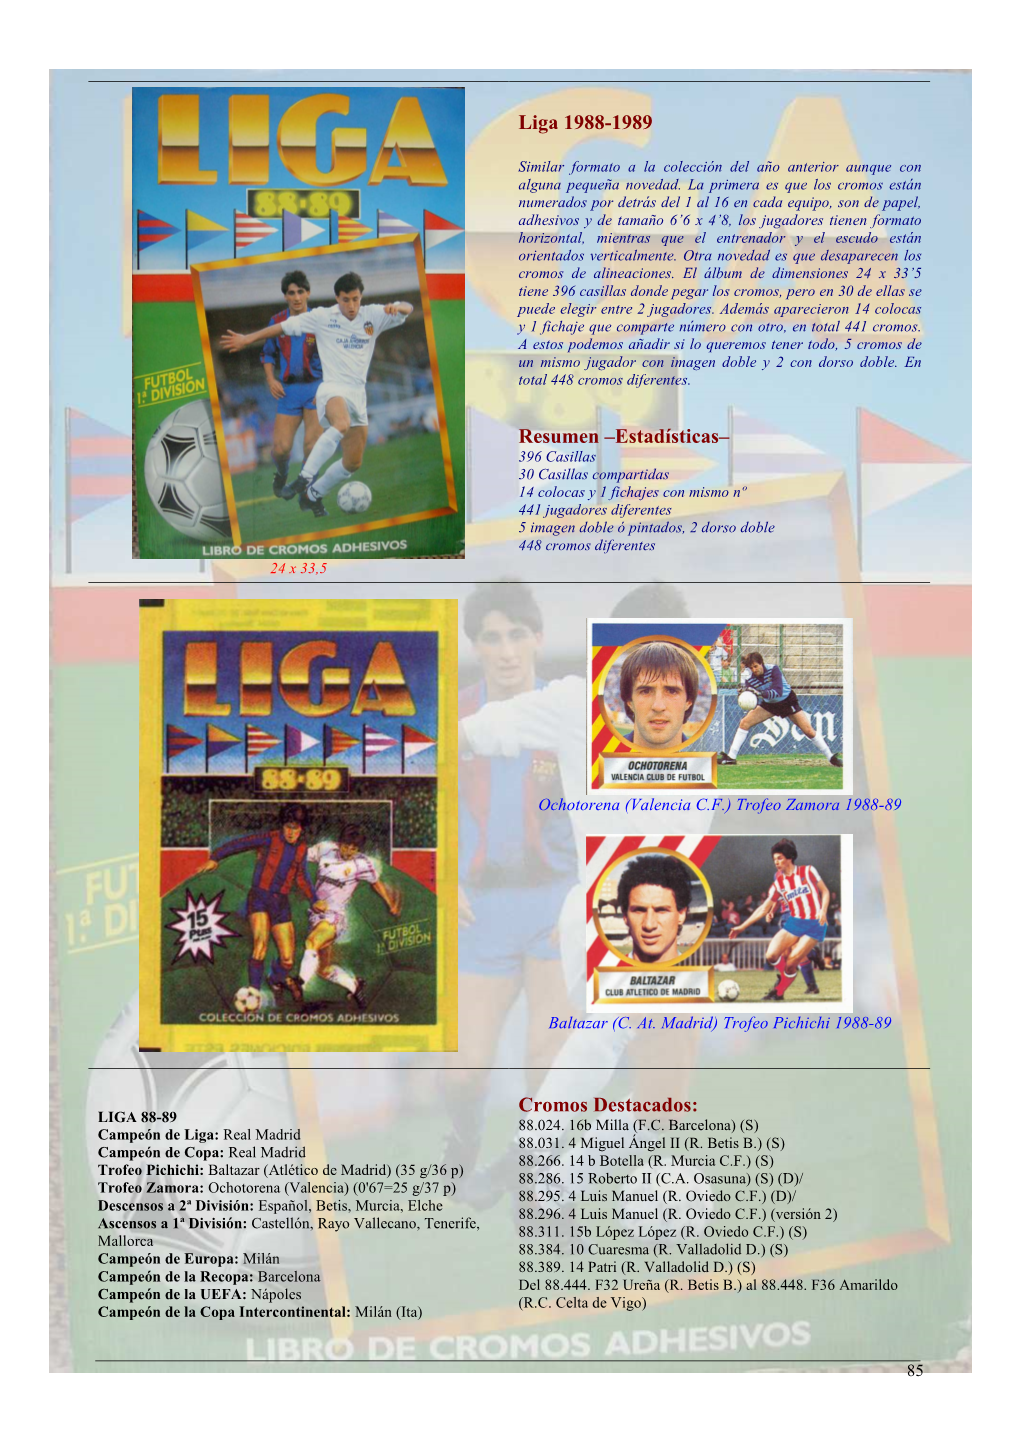 Liga 1988-1989 Resumen